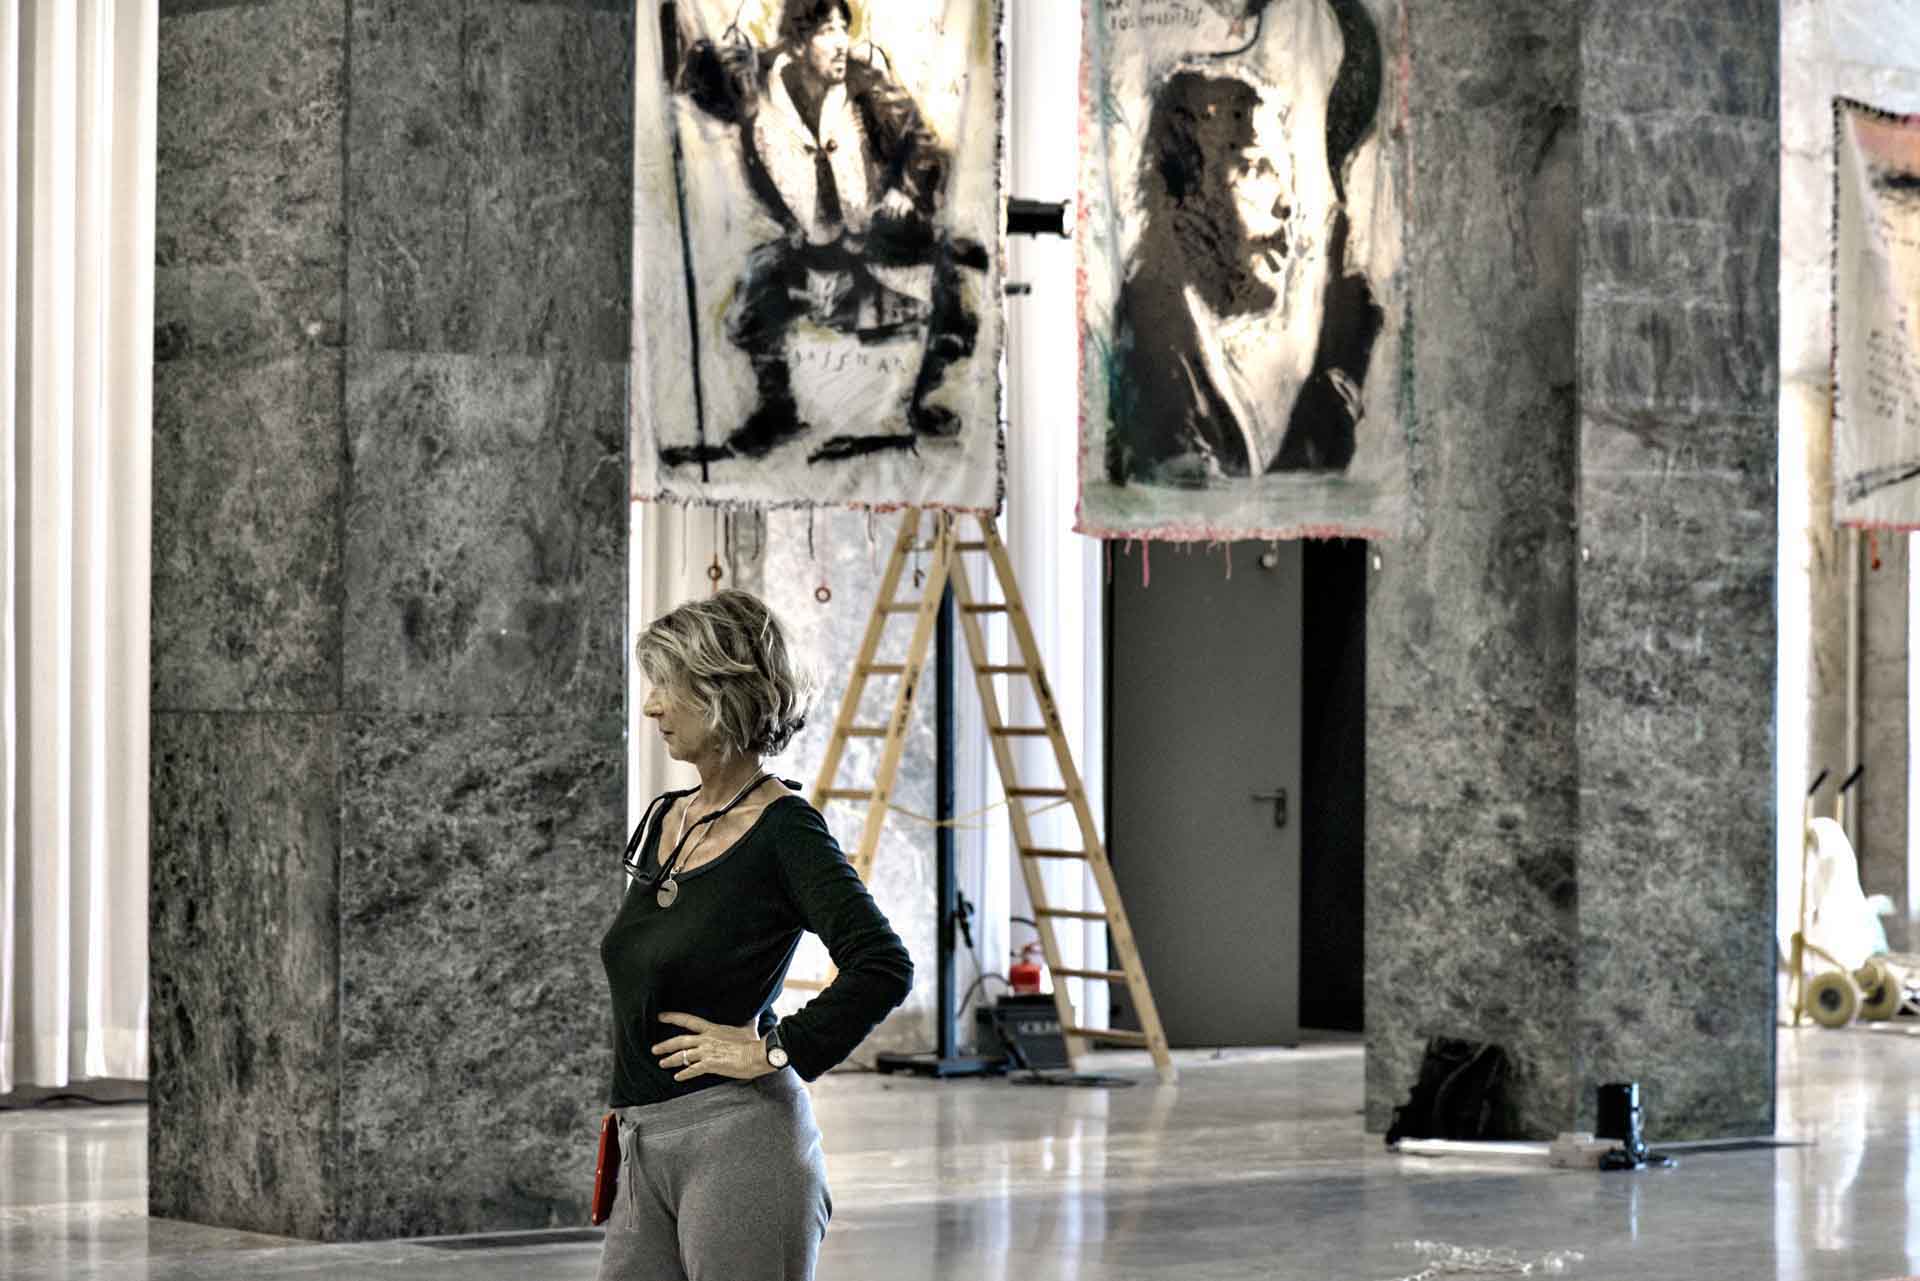 Chiara Rapaccini Mario Monicelli 72 Mostra Internazionale d’ Arte Cinematografica – La Biennale di venezia 2015 00004